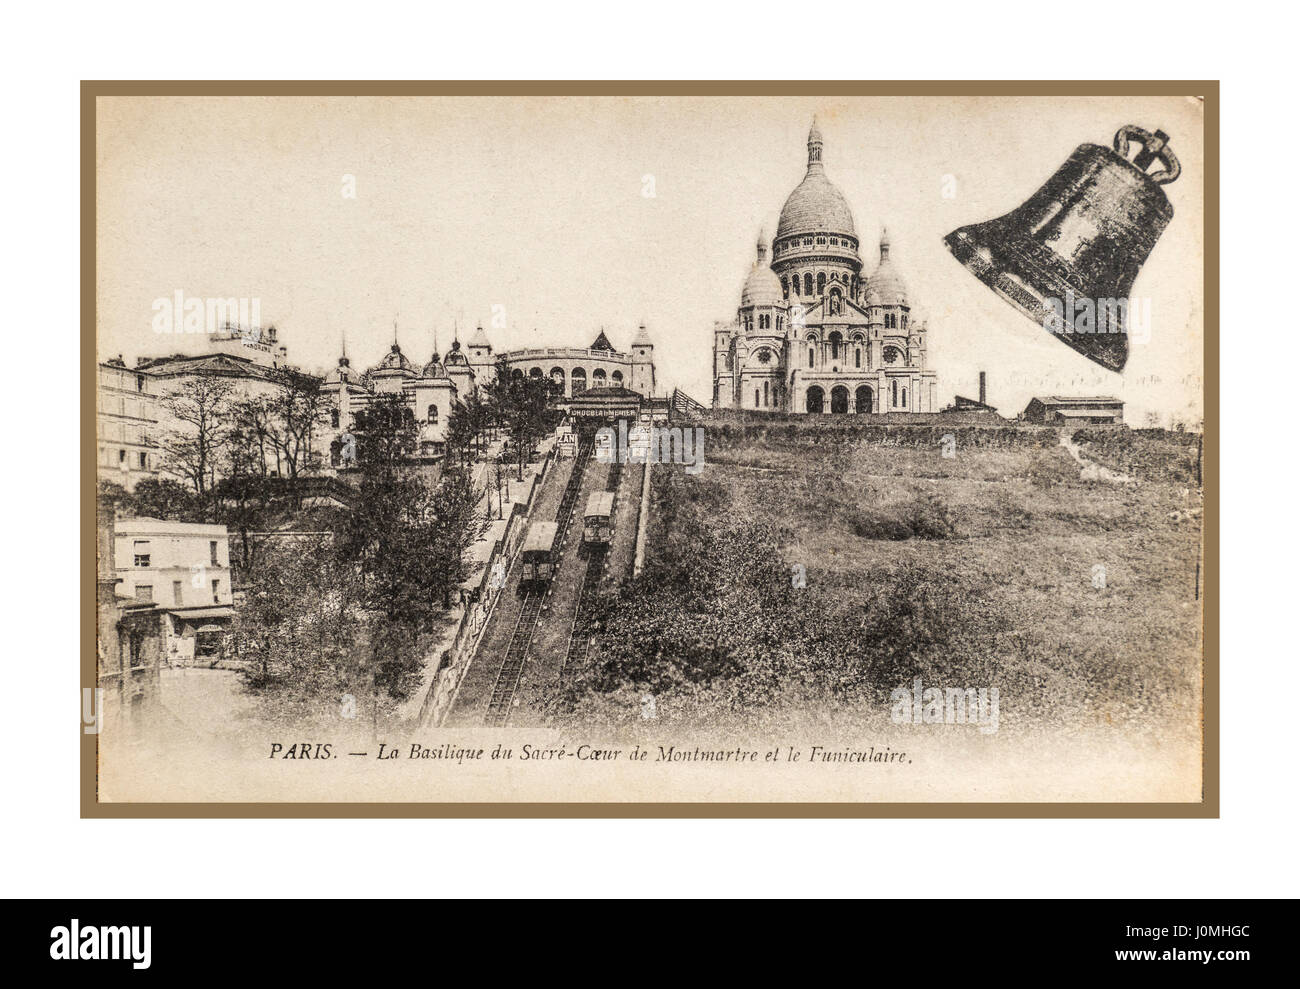 Jahrgang 1900 historische B&W Sepia Blick auf Basilika Sacre Coeur und Seilbahn Wagen auf Gleis Montmartre Paris Frankreich Stockfoto